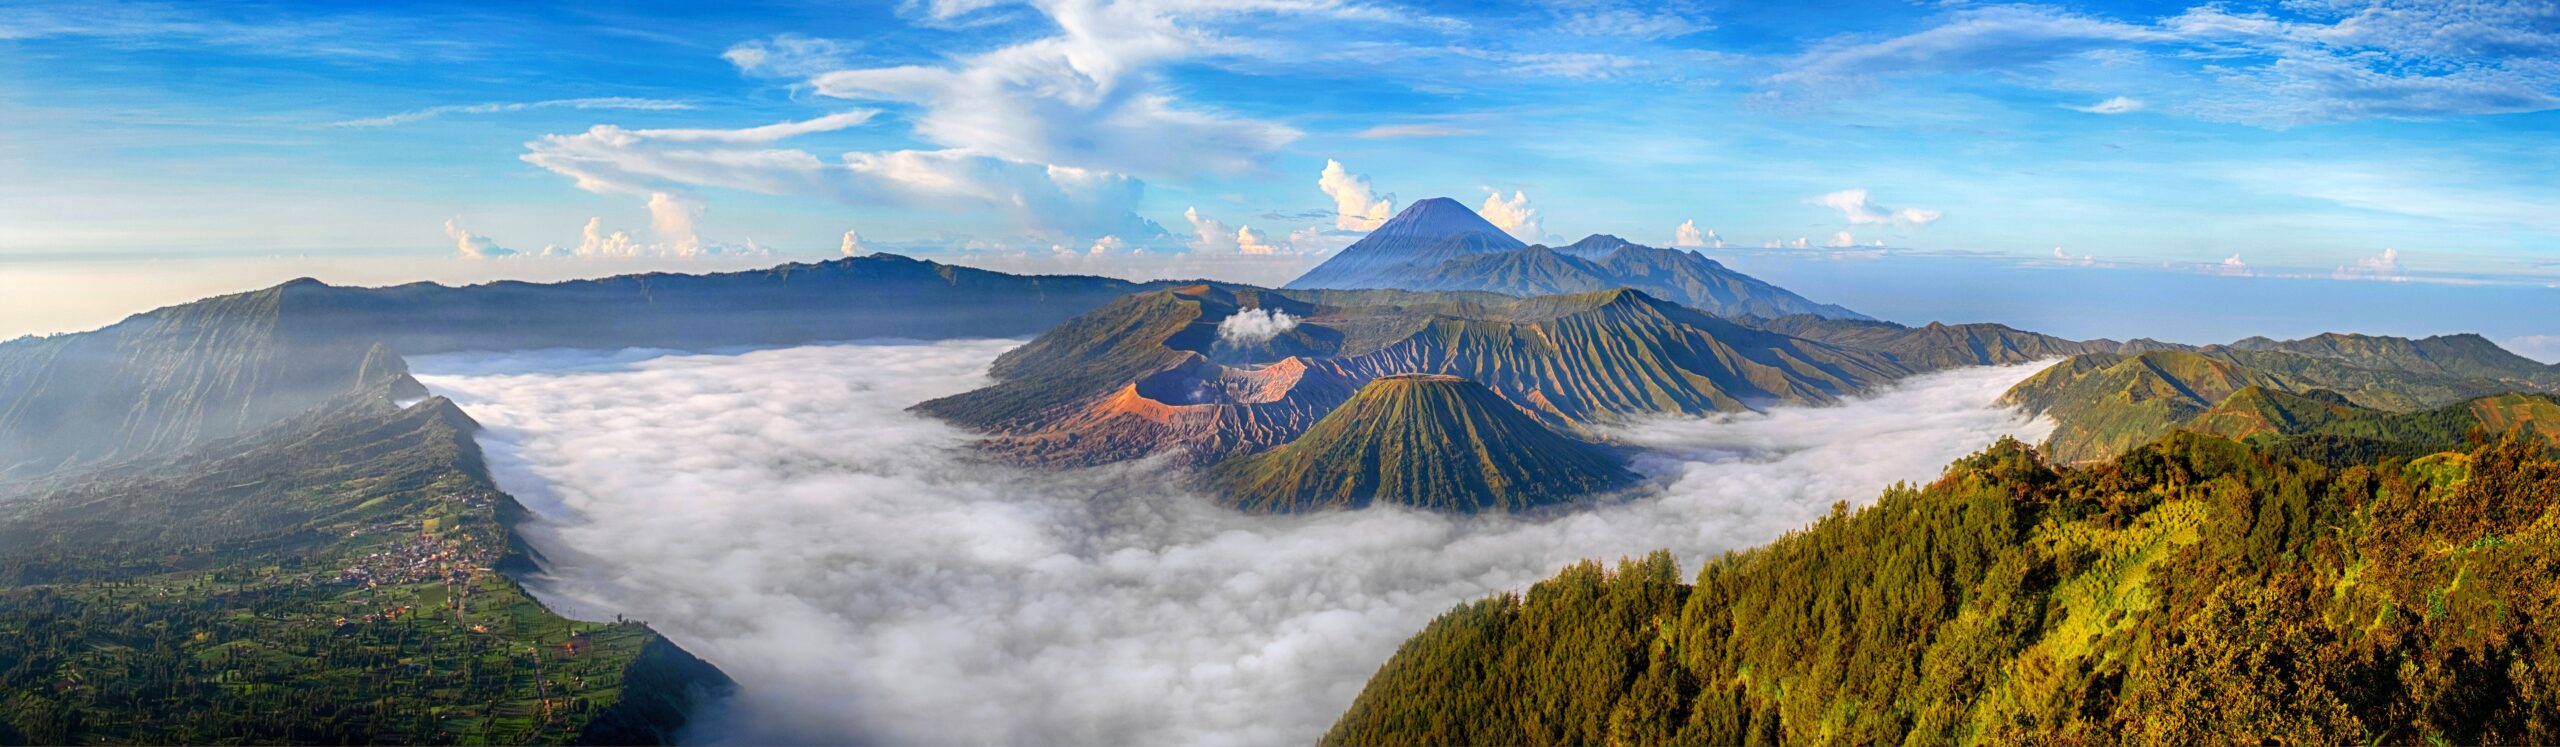 Blog artikel 'Top 10 Leukste excursies in Indonesië'